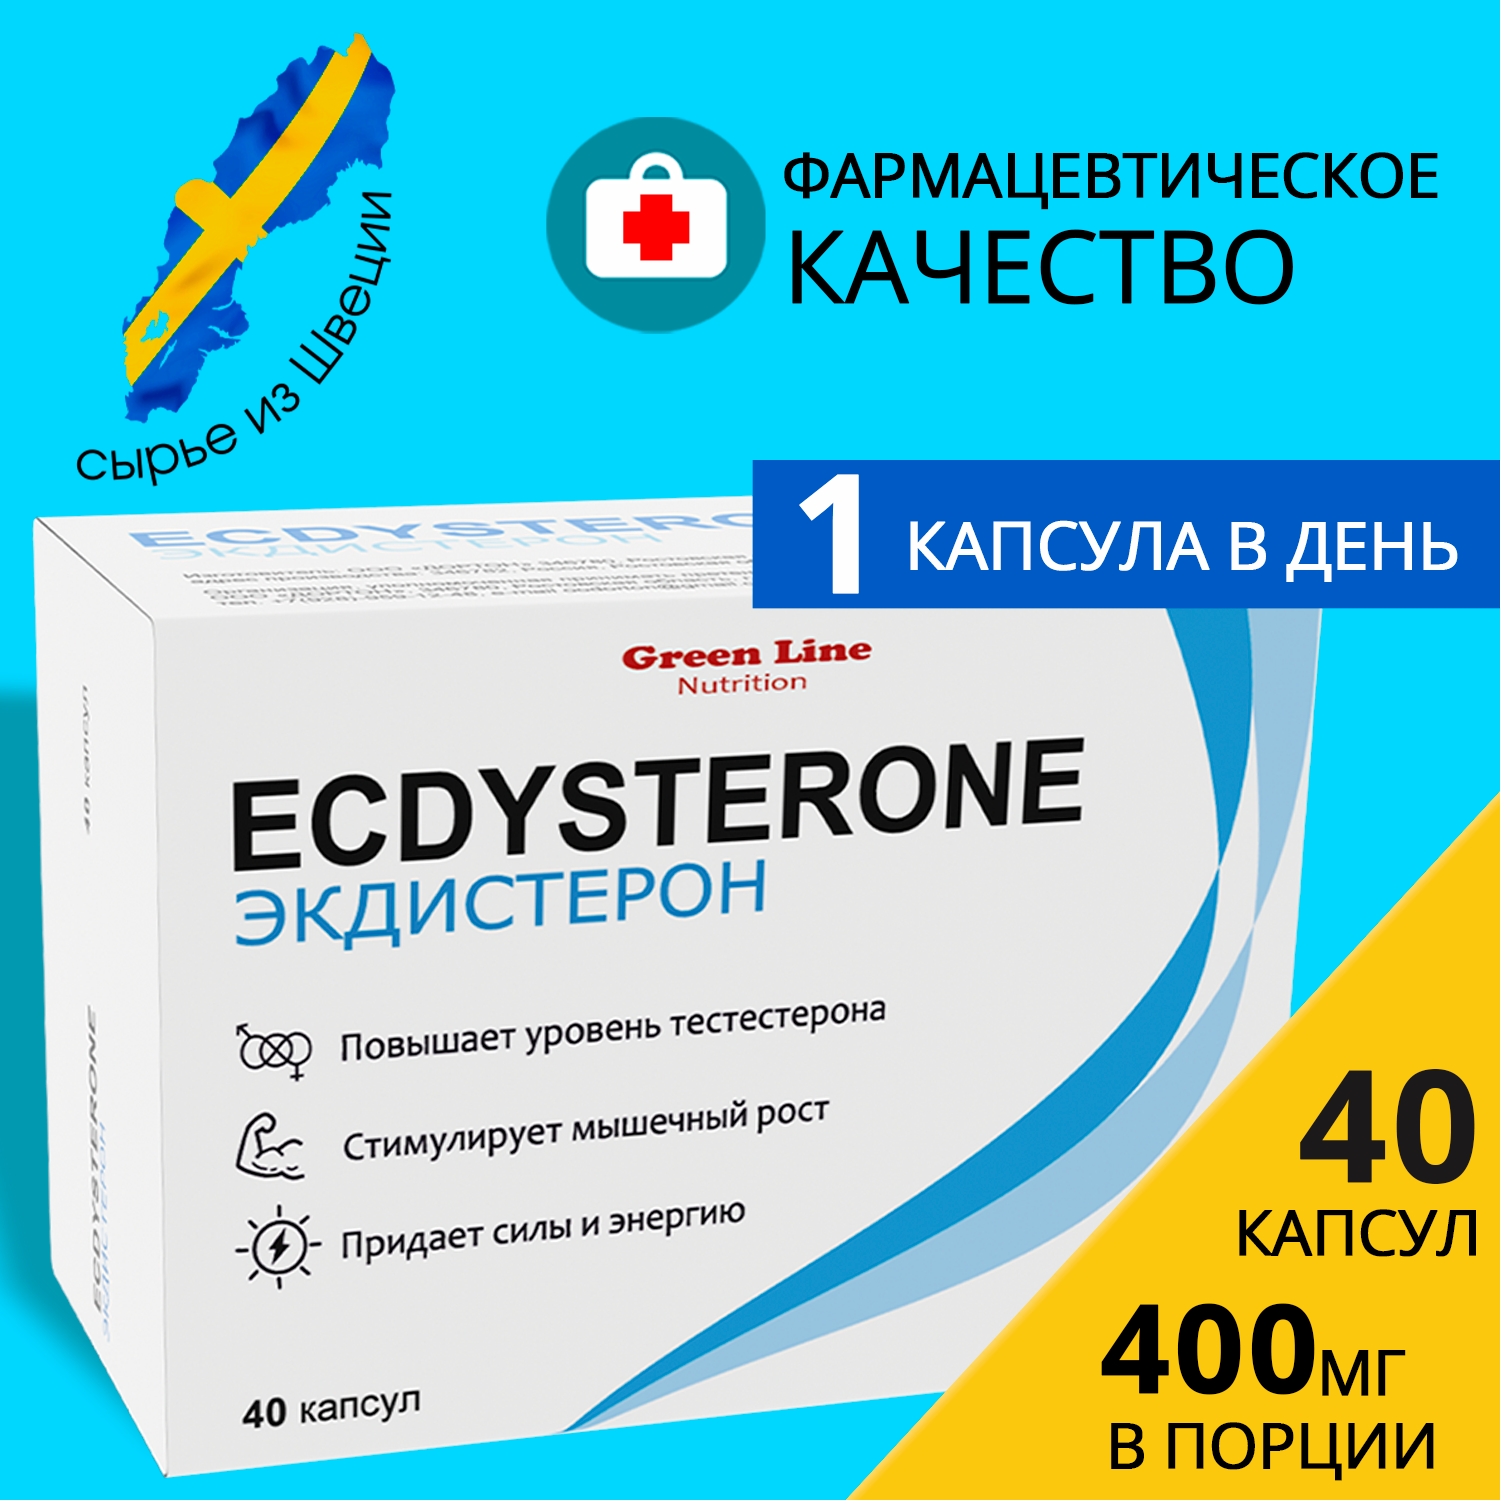 Бустер тестостерона Экдистерон 400 мг, БАД Ecdysterone-S 40 порций, средство, препарат, натуральный, тестостерон, для потенции, тестобустер, бустер тестостерона, эффективный, форте, для повышения, мышцы, масса, при эректильной дисфункции, для мужчин